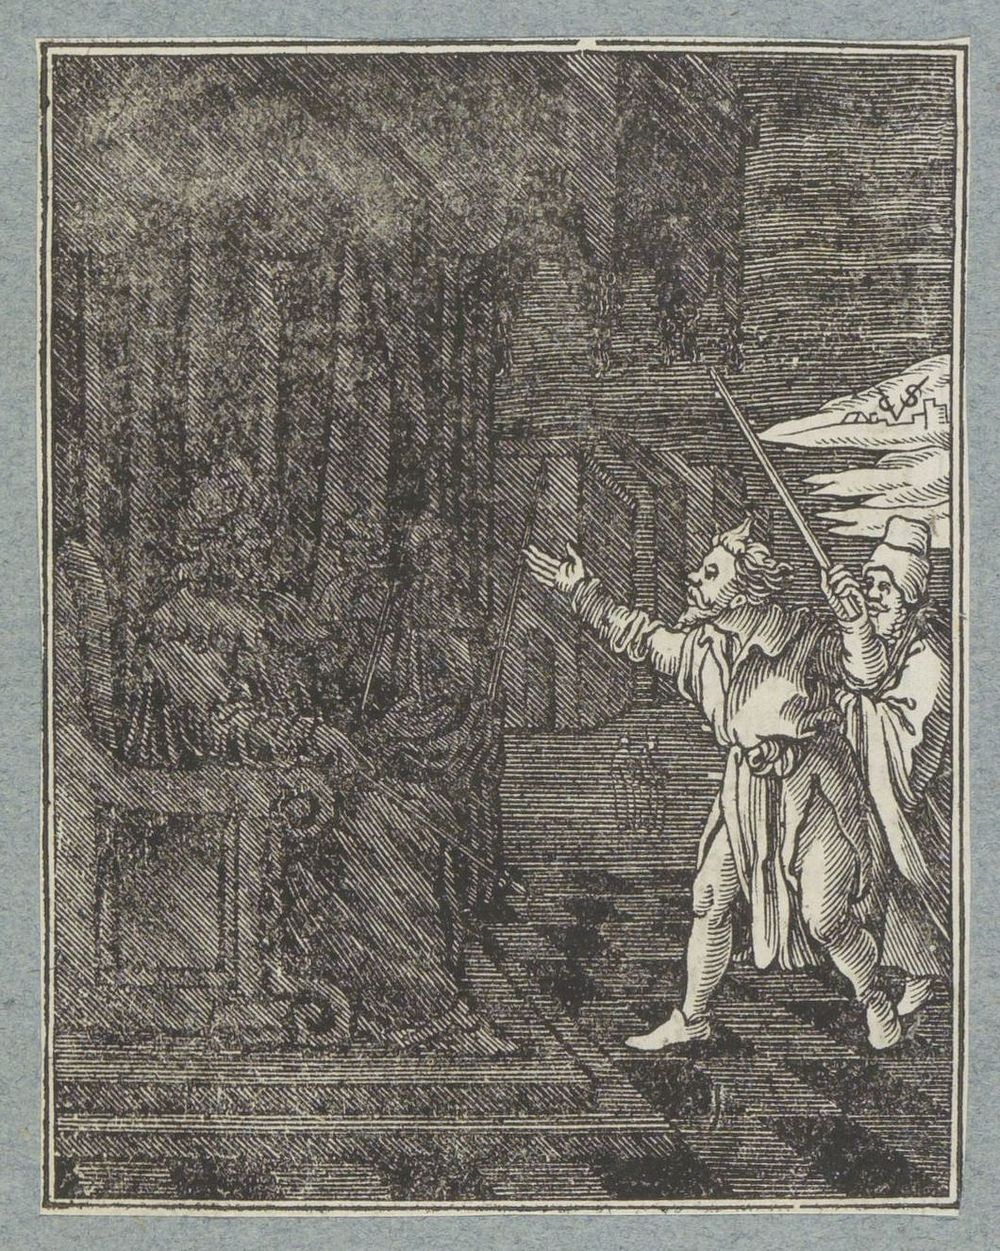 Plaag van de duisternis (1645 - 1646) by Christoffel van Sichem II, Christoffel van Sichem III and Pieter Jacobsz Paets